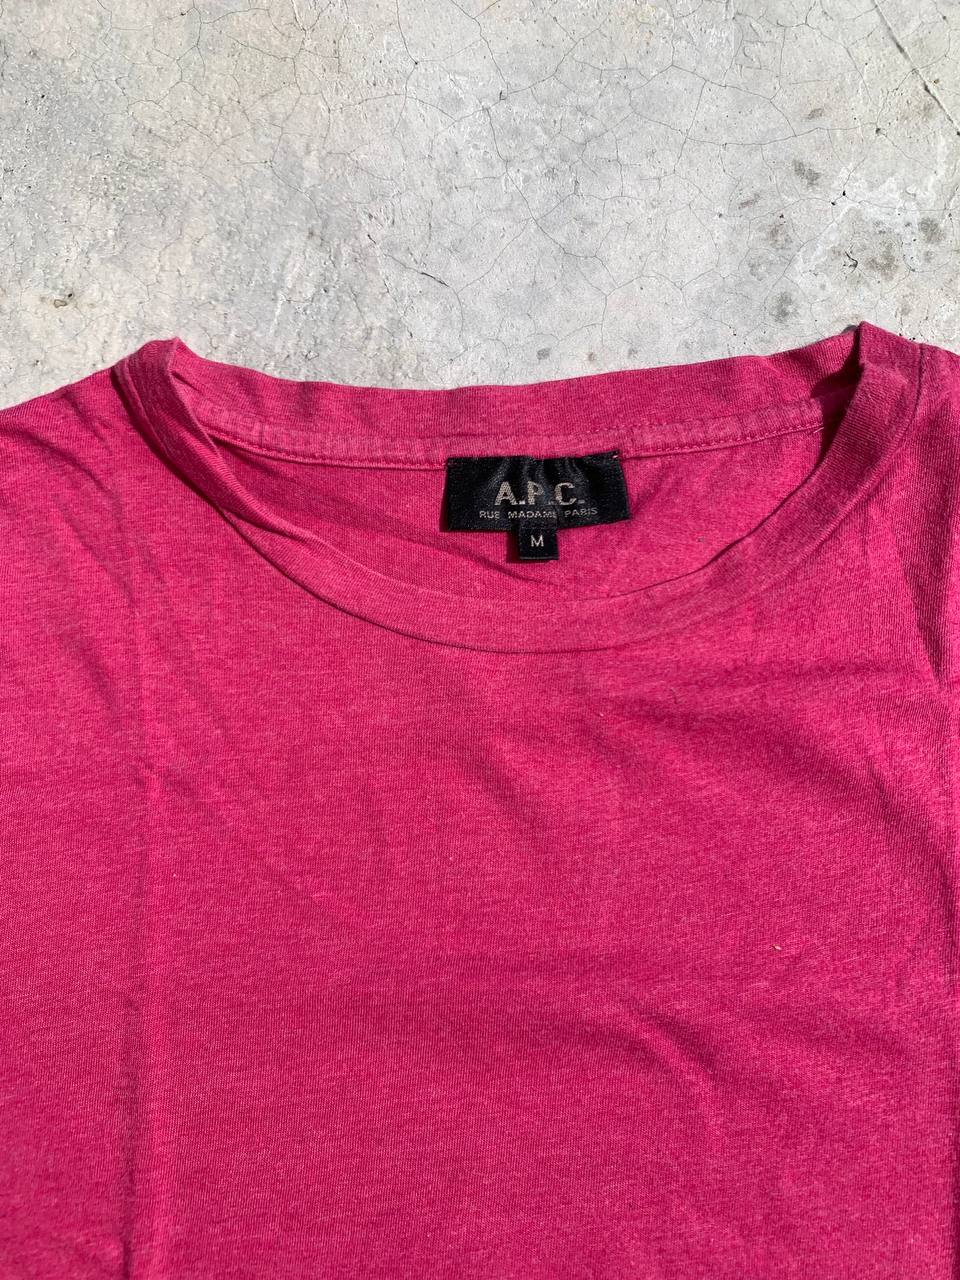 APC Plain Tshirt - 2